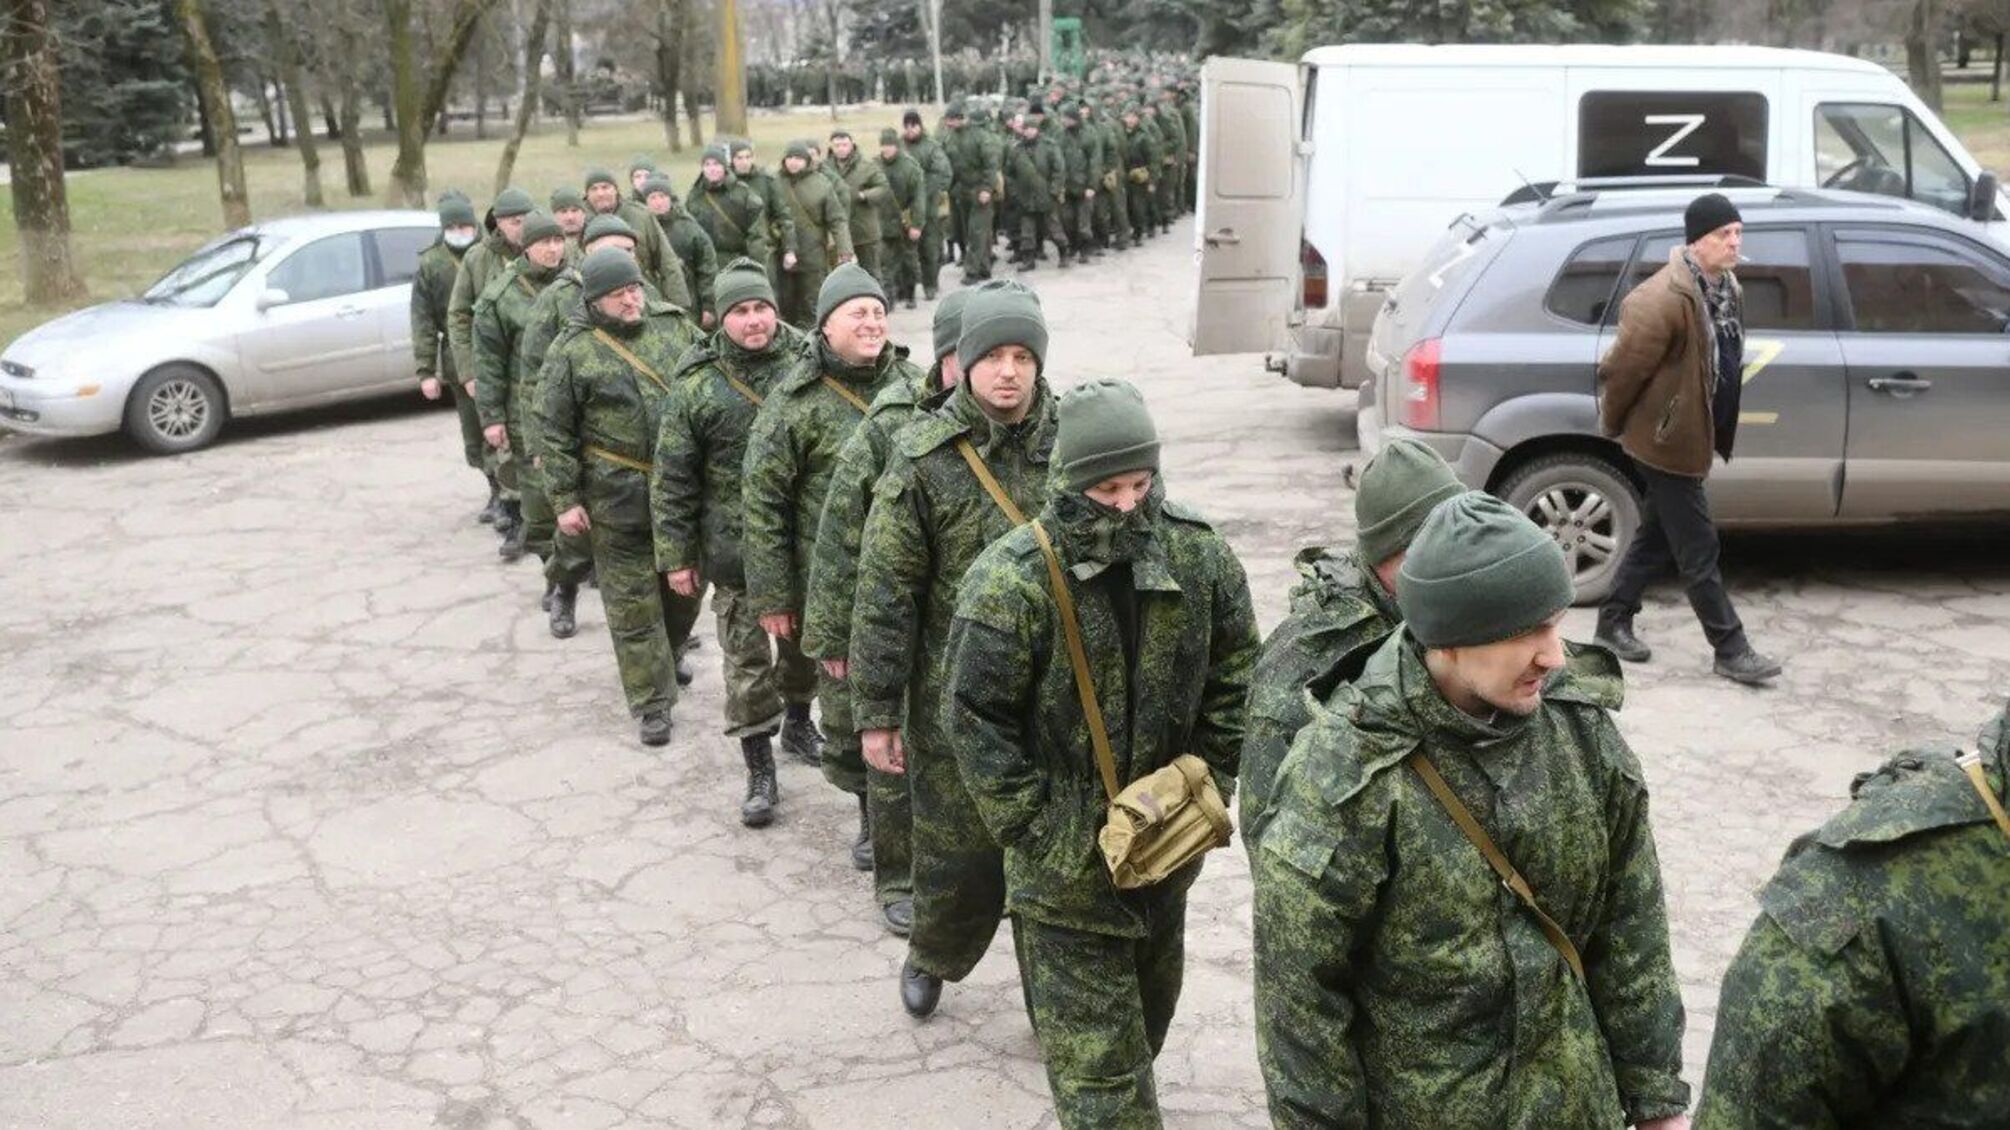 ФСБ россии ограничило выезд военнообязанных граждан из страны: что известно